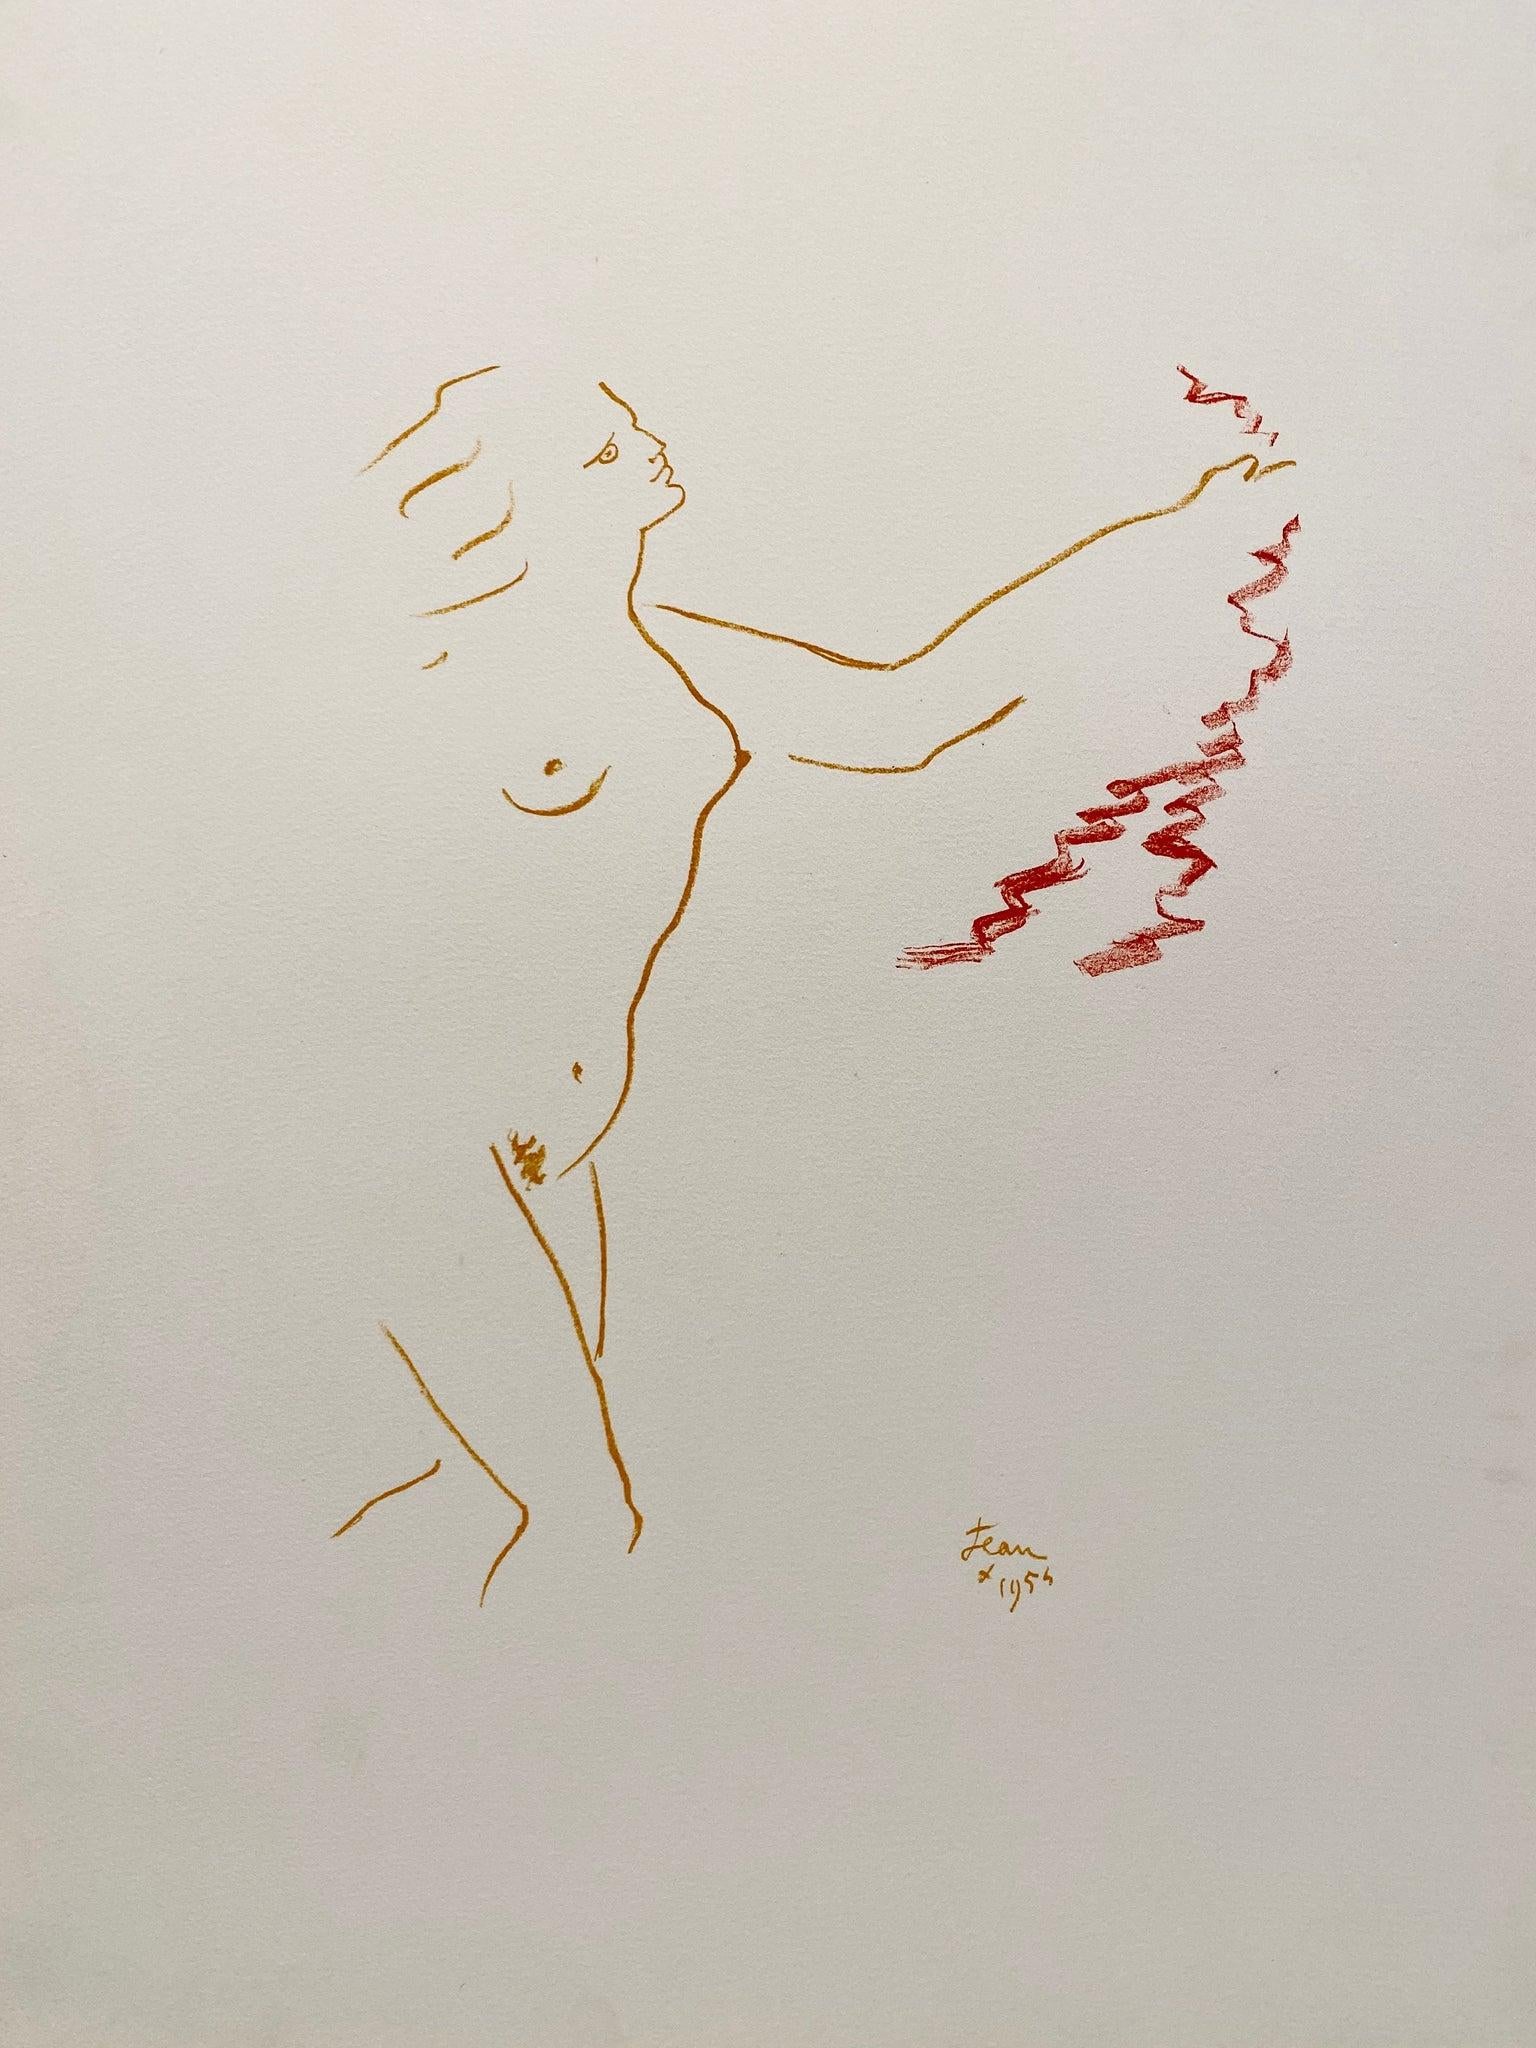 Künstler: Jean Cocteau

Medium: Original-Lithographie, 1956 / 1975

Abmessungen: 19.5 x 25,5 Zoll, 49,5 x 64,8 cm

Arches Papier - Ausgezeichneter Zustand A

Diese Originallithographie stammt aus der illustrierten Mappe: "Jean Cocteau: 25